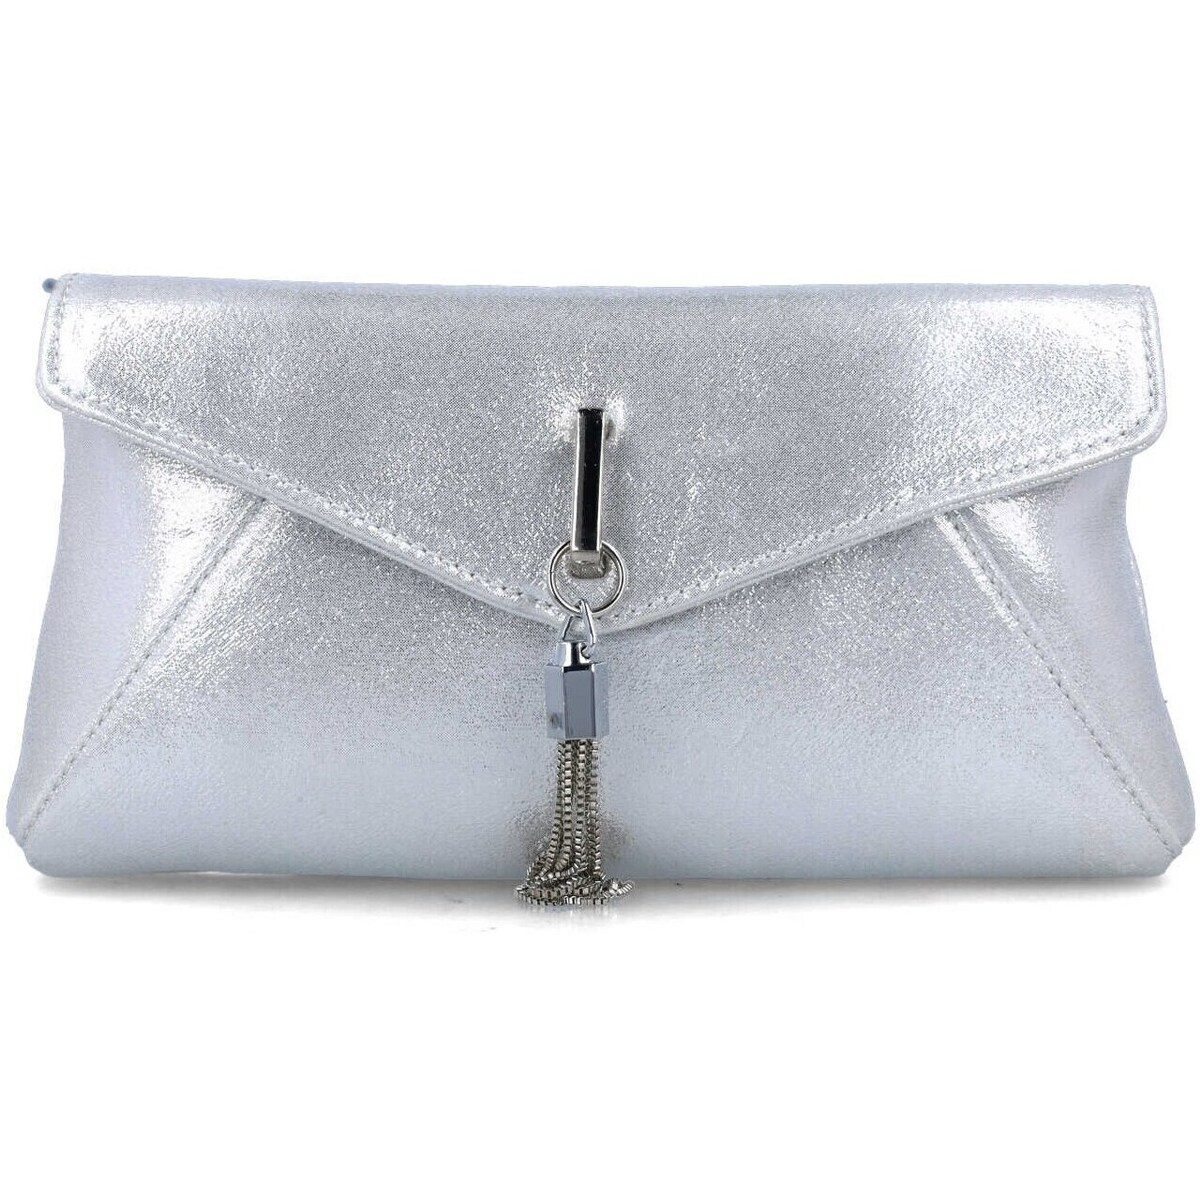 Taschen Damen Geldtasche / Handtasche Menbur 85698 Silbern